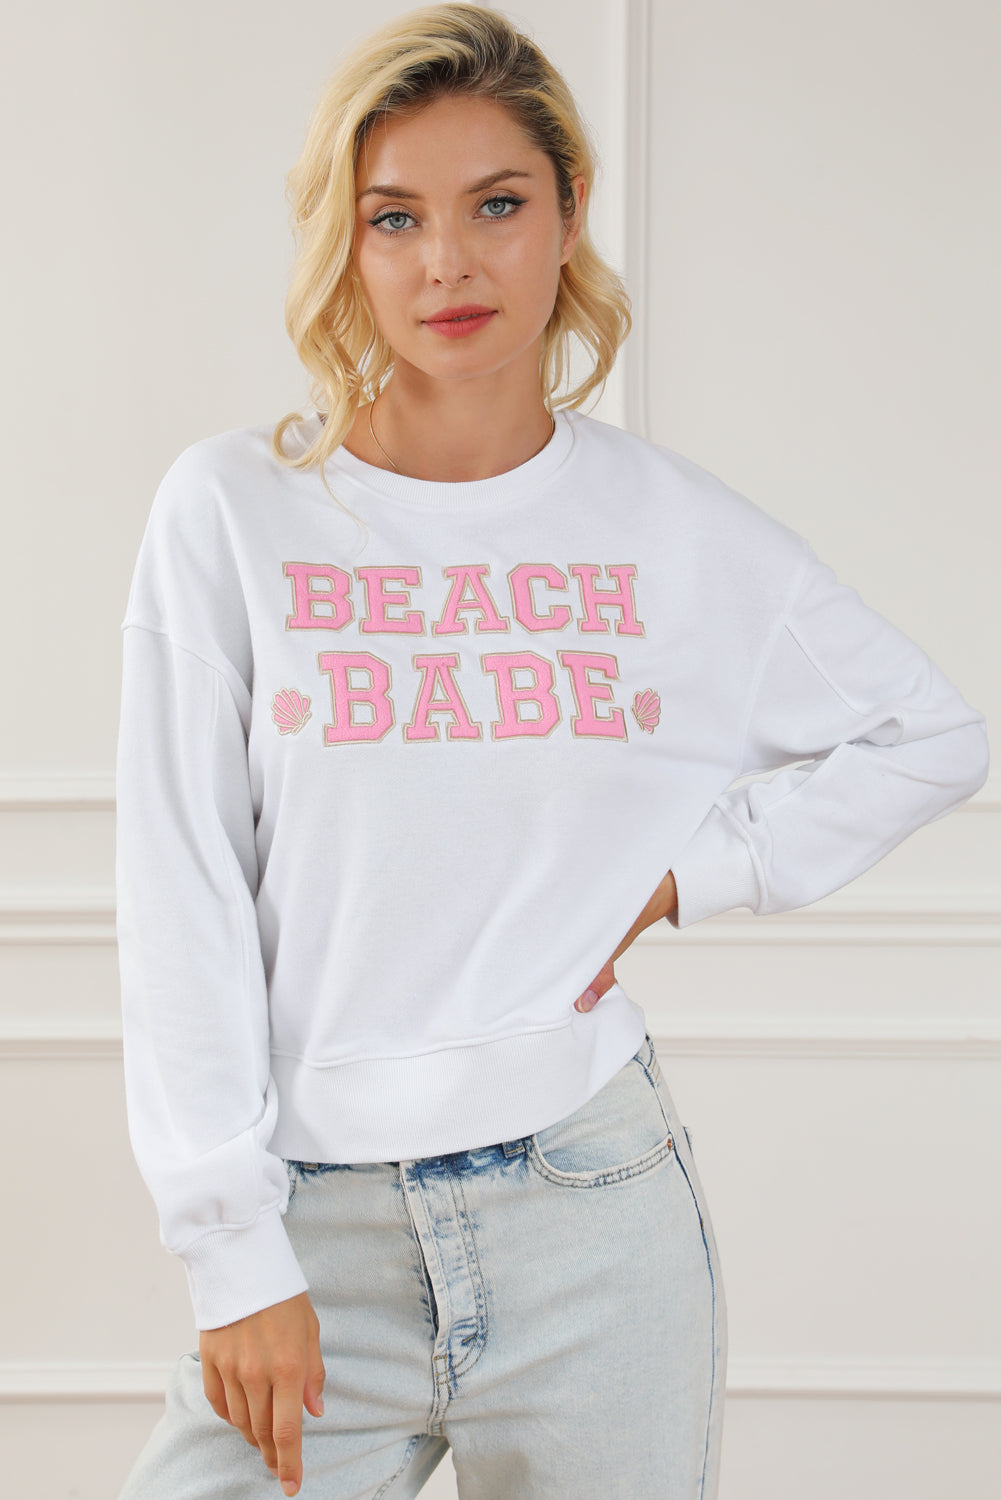 White BEACH BABE Slogan Graphic Casual Sweatshirt